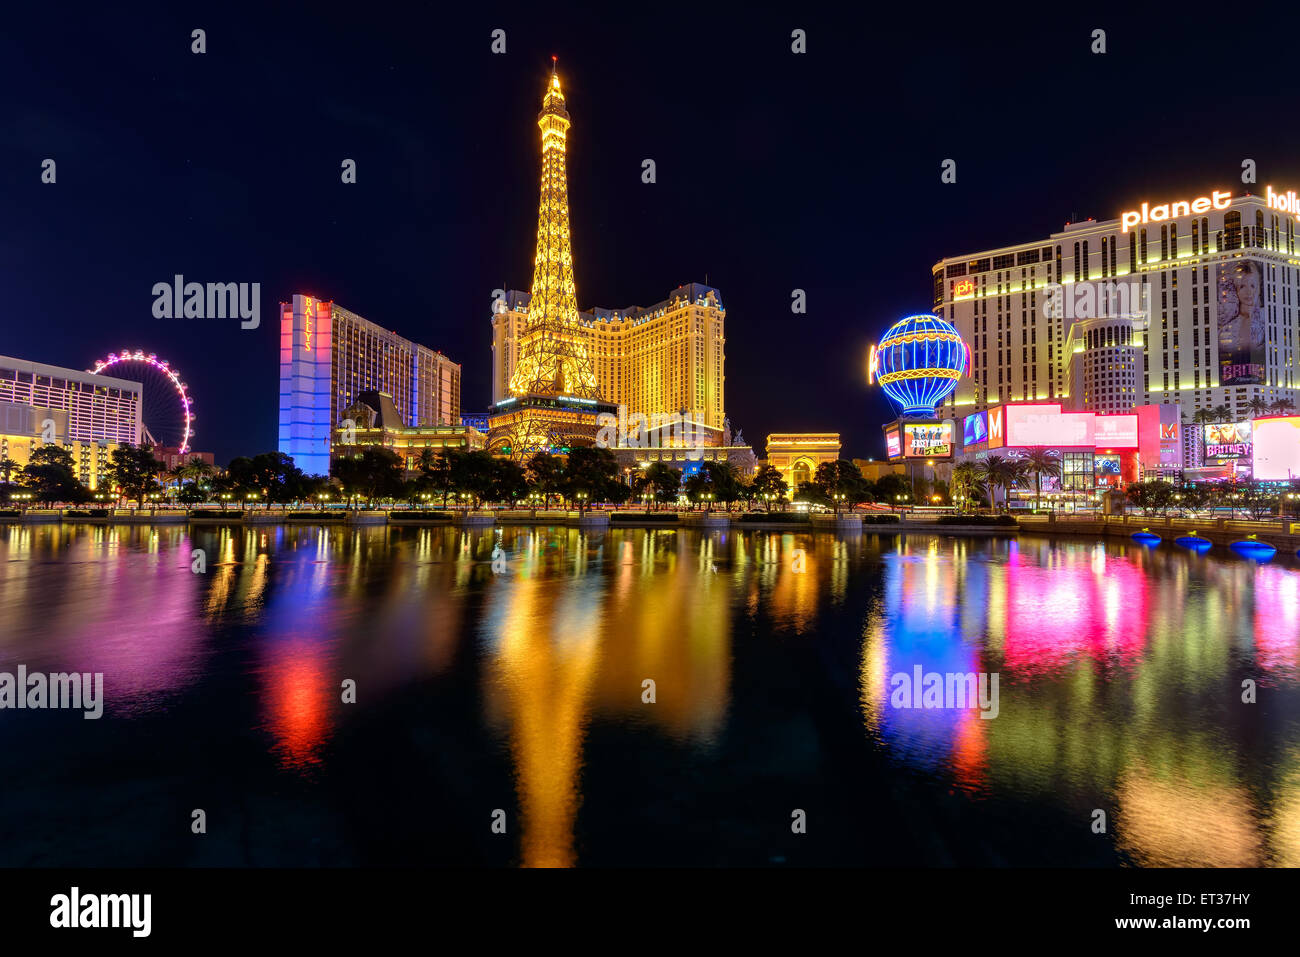 Night illumination on Las Vegas Strip, Nevada Stock Photo